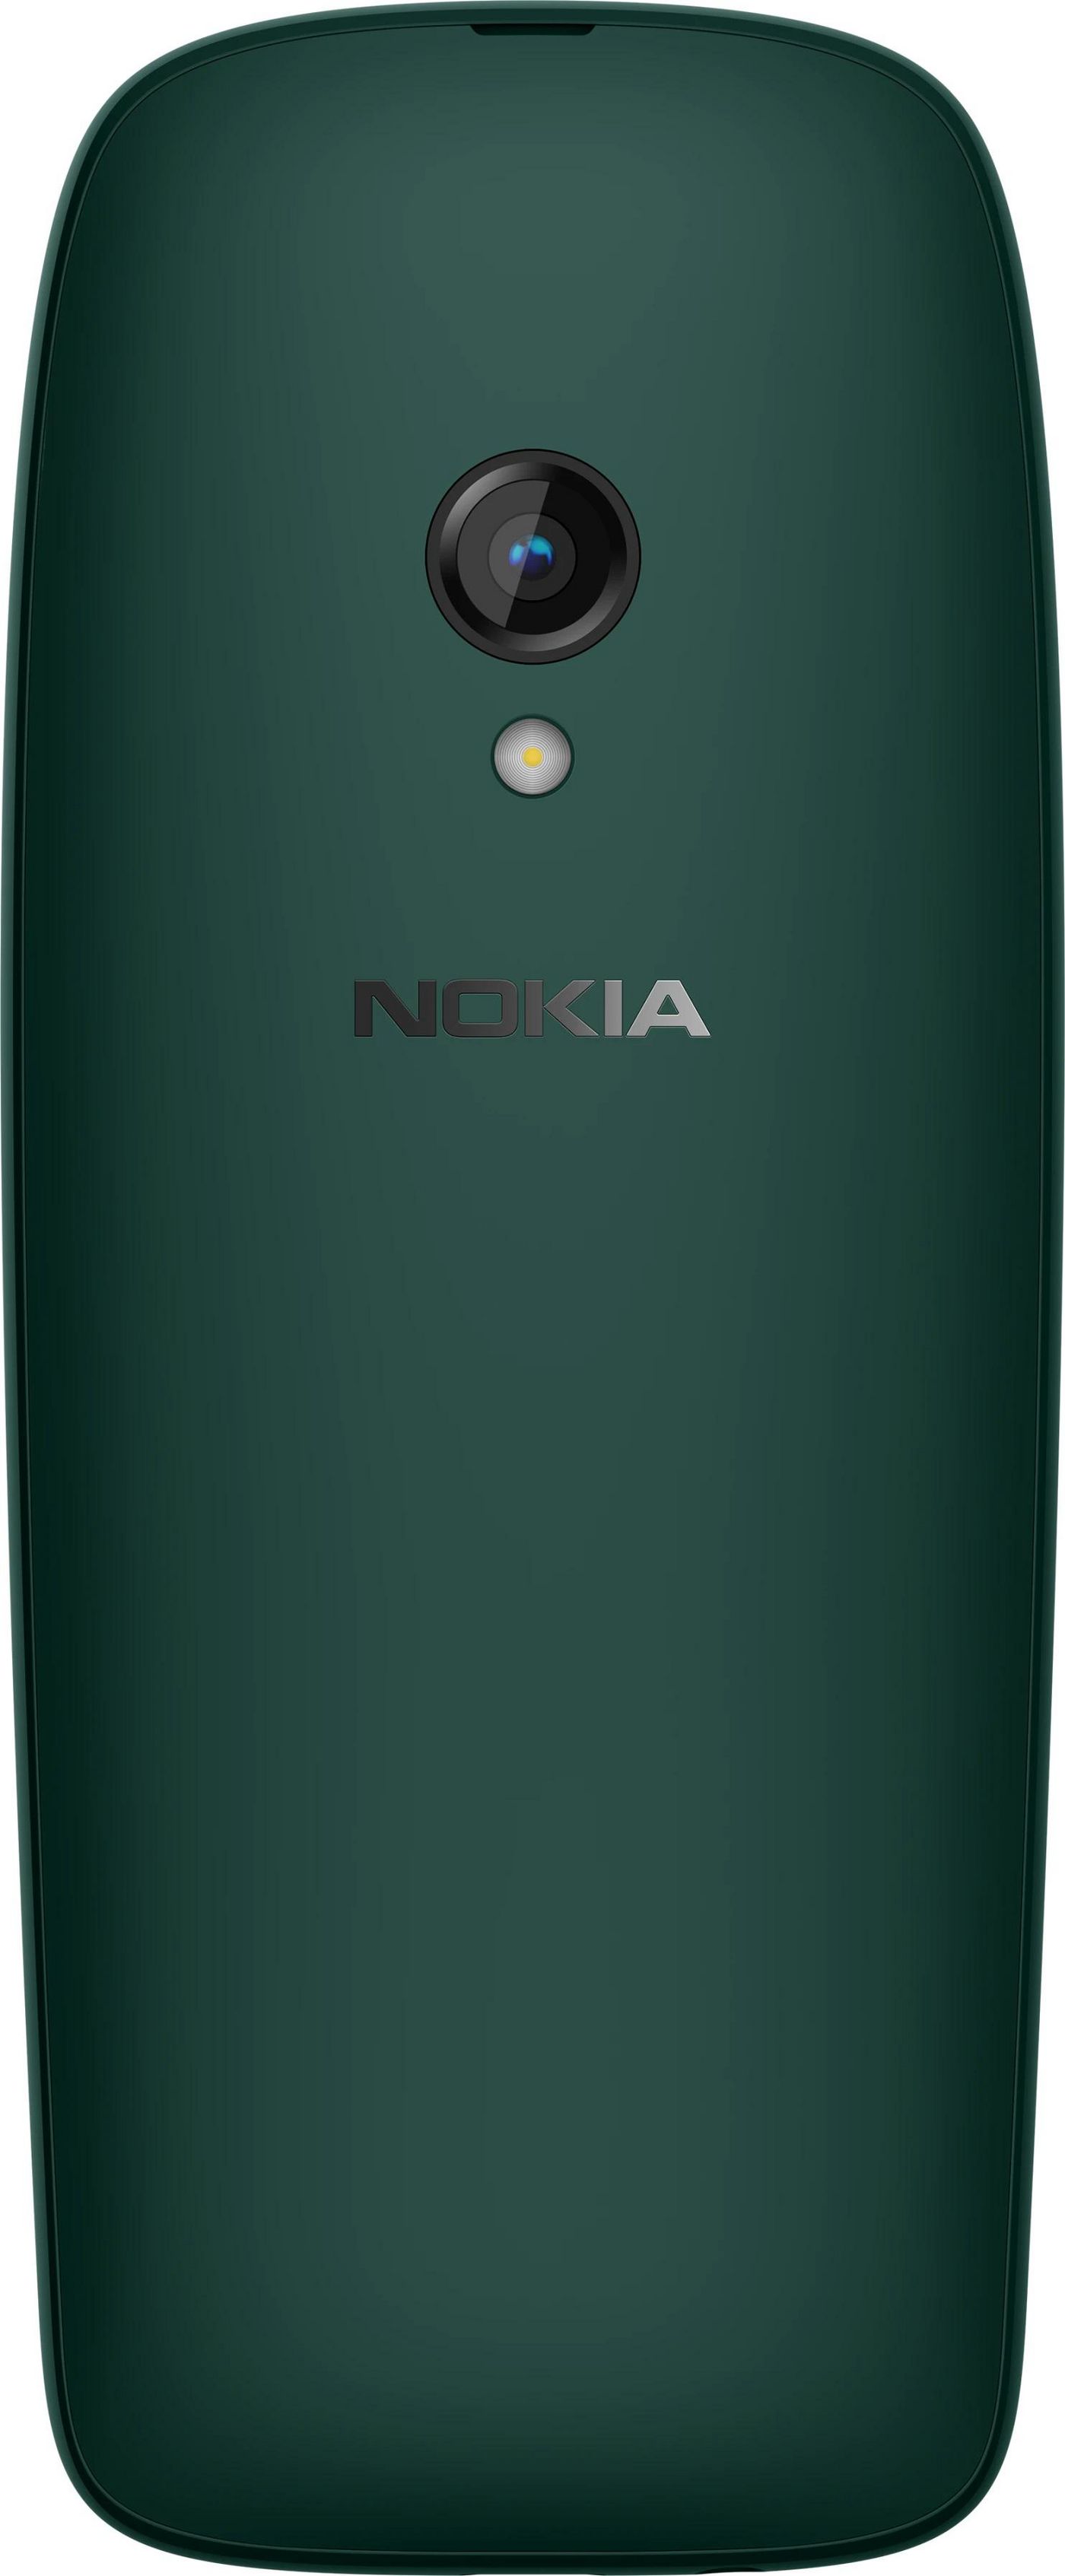 Nokia 16POSE01A06 W128299415 6310 7.11 Cm 2.8 Green 